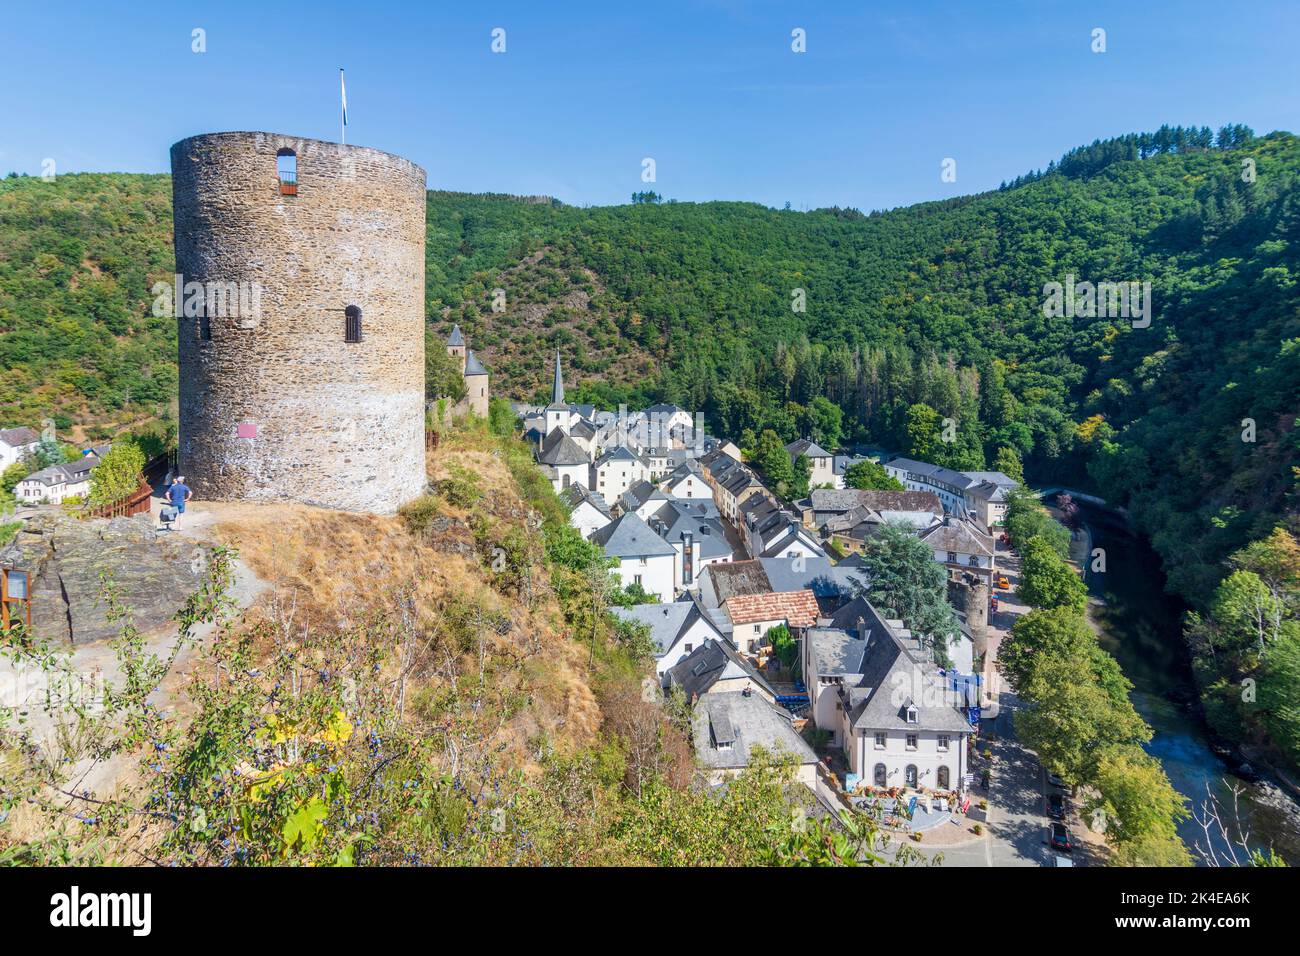 Esch-sur-Sûre (Esch-Sauer): Castello di Esch-sur-Sure, centro storico, valle del fiume Sauer (Sure) in Lussemburgo Foto Stock